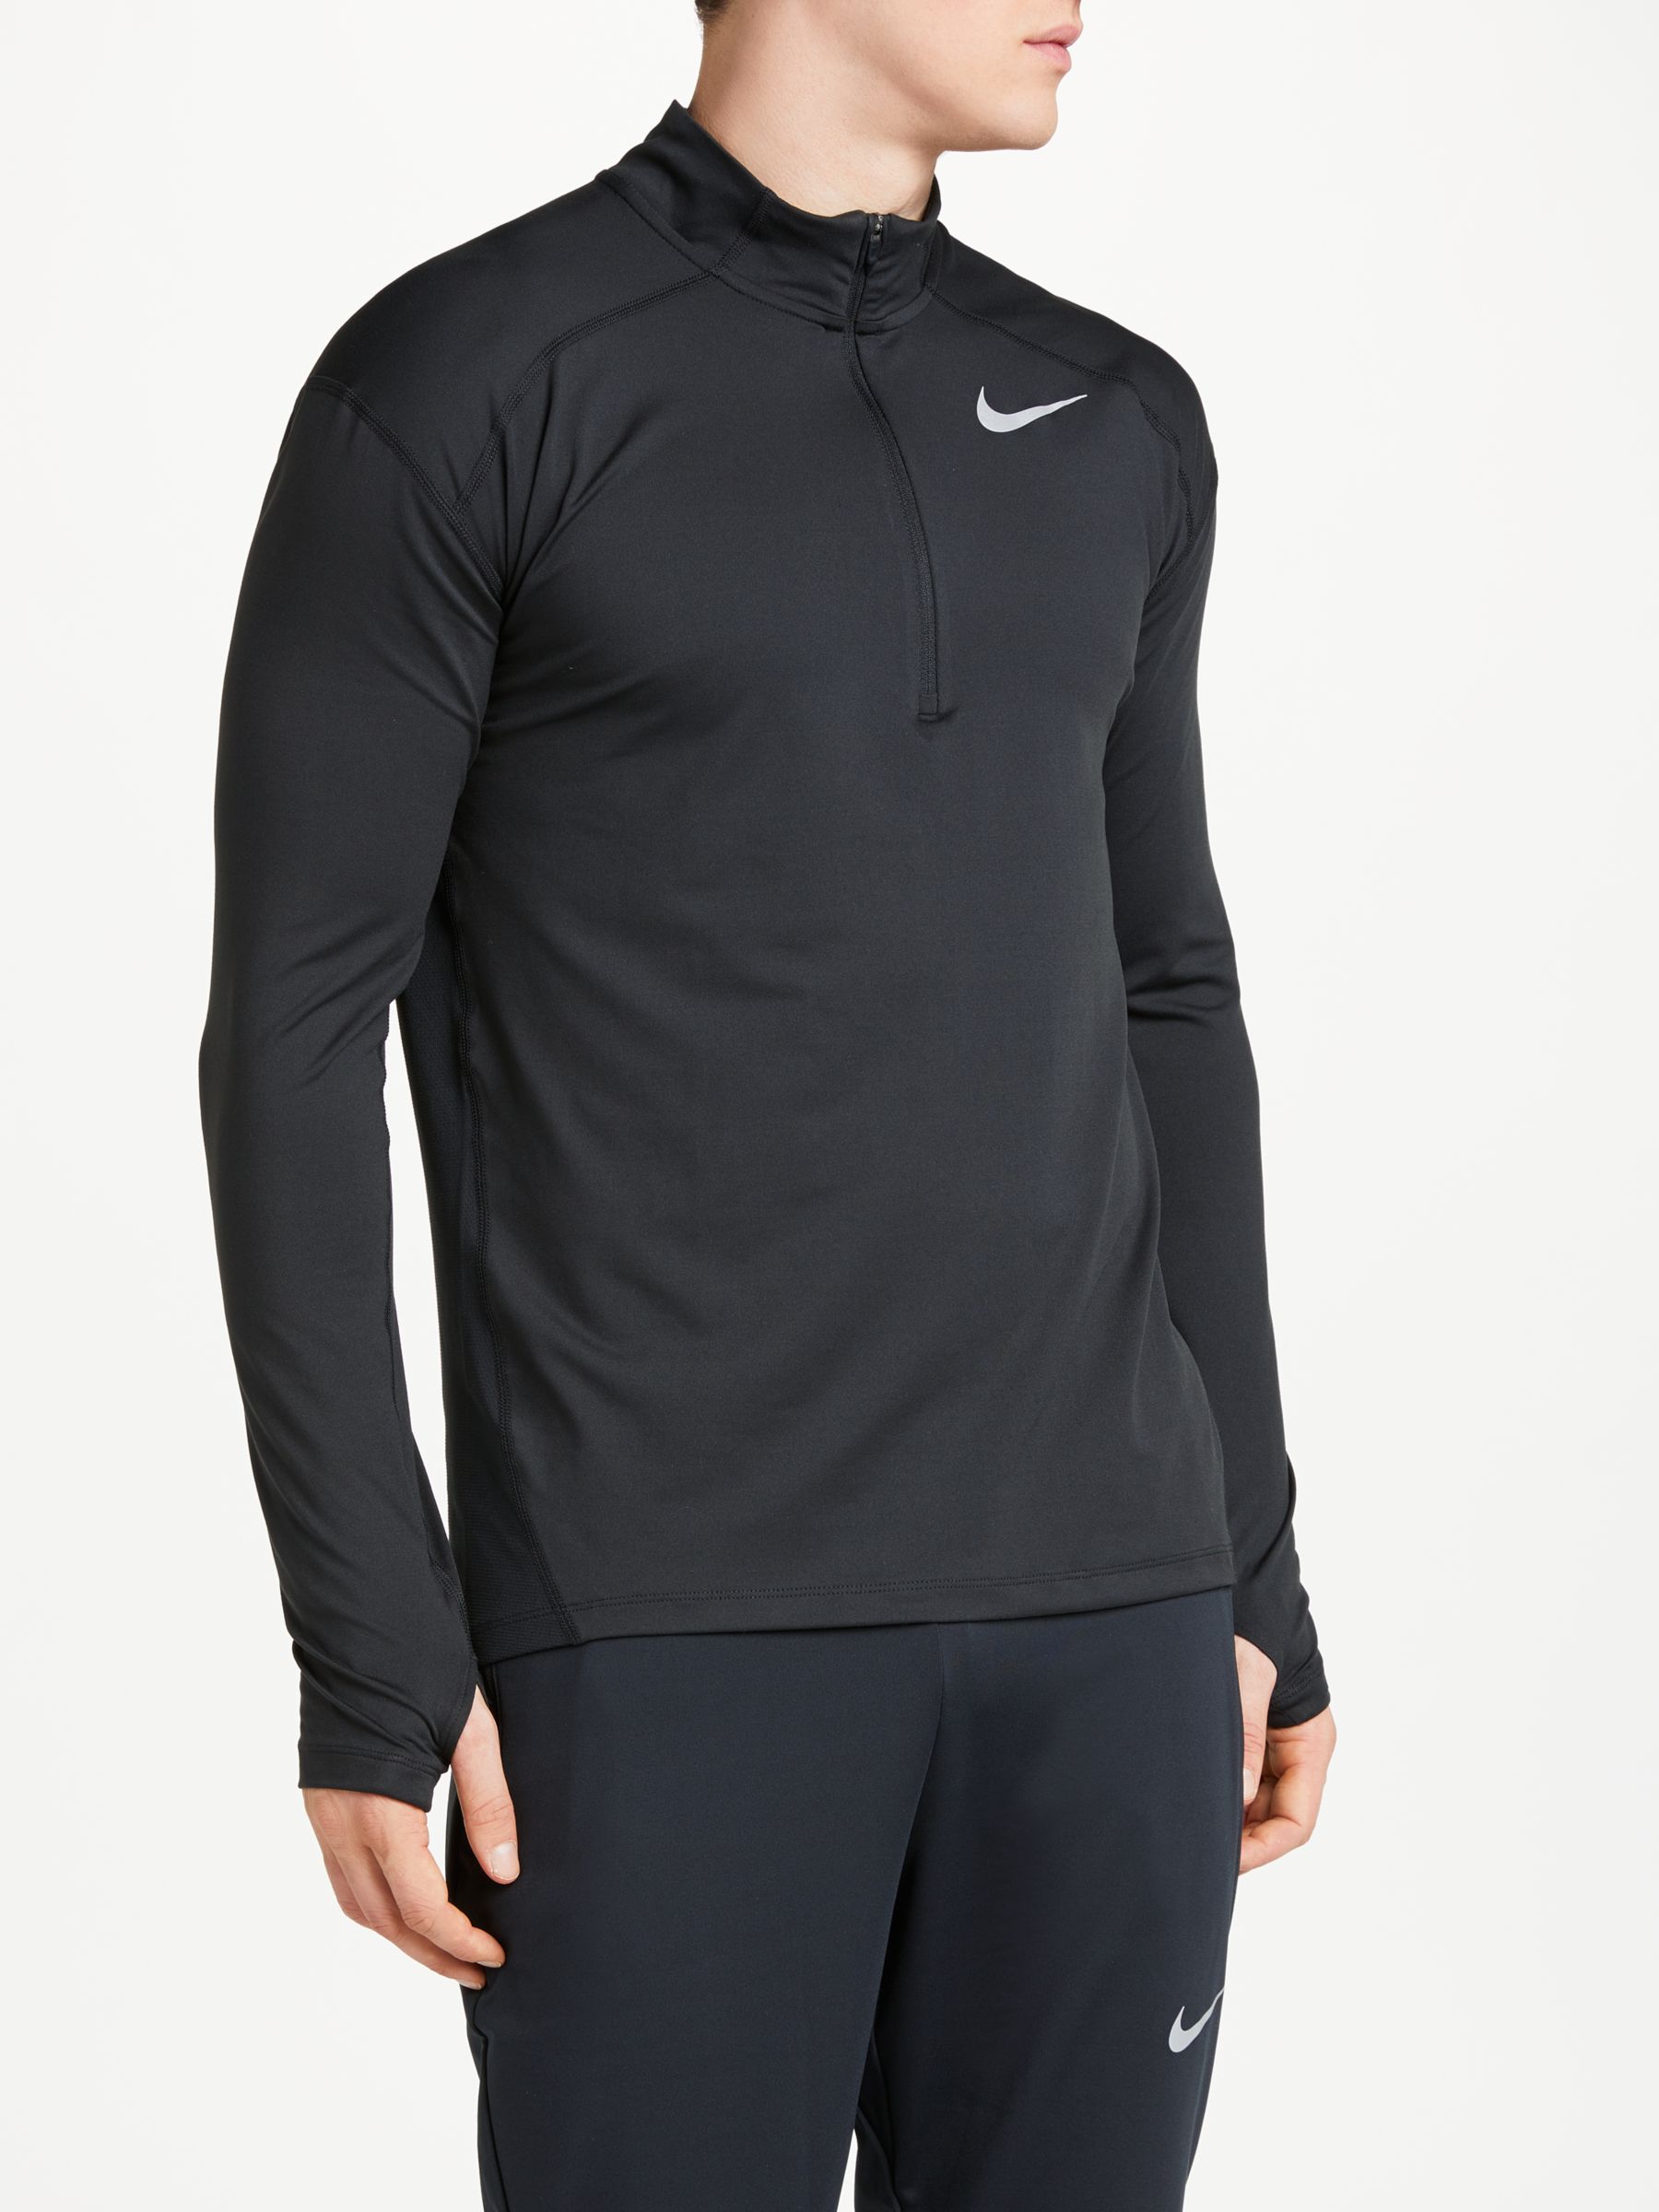 Nike Dry Element Long Sleeve 1/2 Zip Running Top, Black